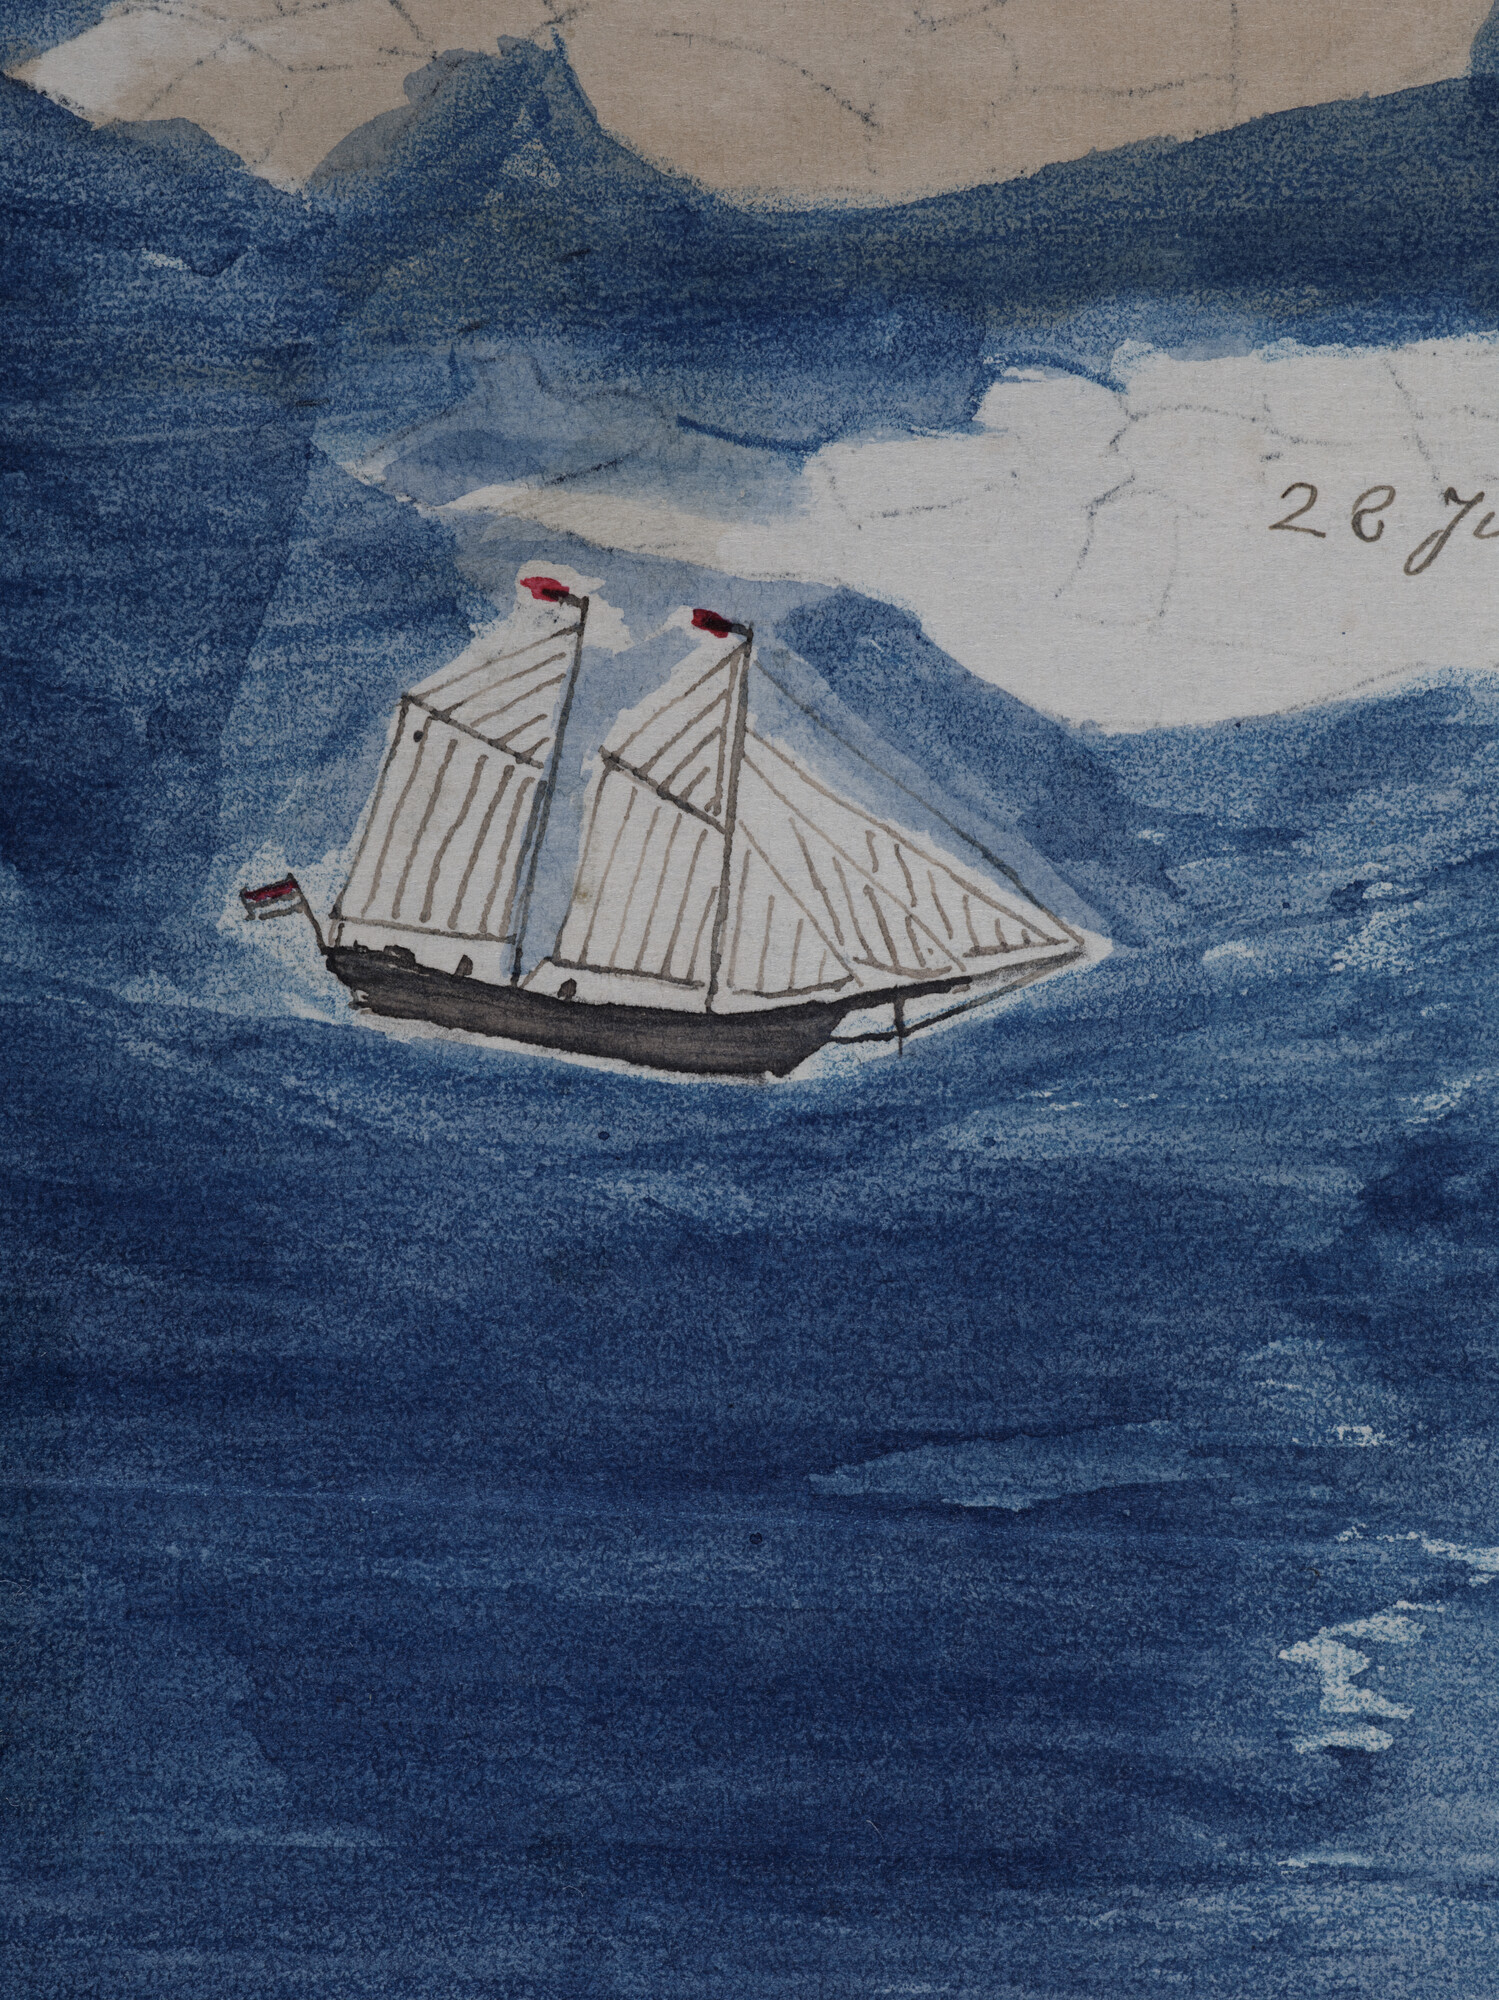 2008.0453; Tekening van de poolschoener Willem Barents tussen drijfijs op de Barentszzee; tekening